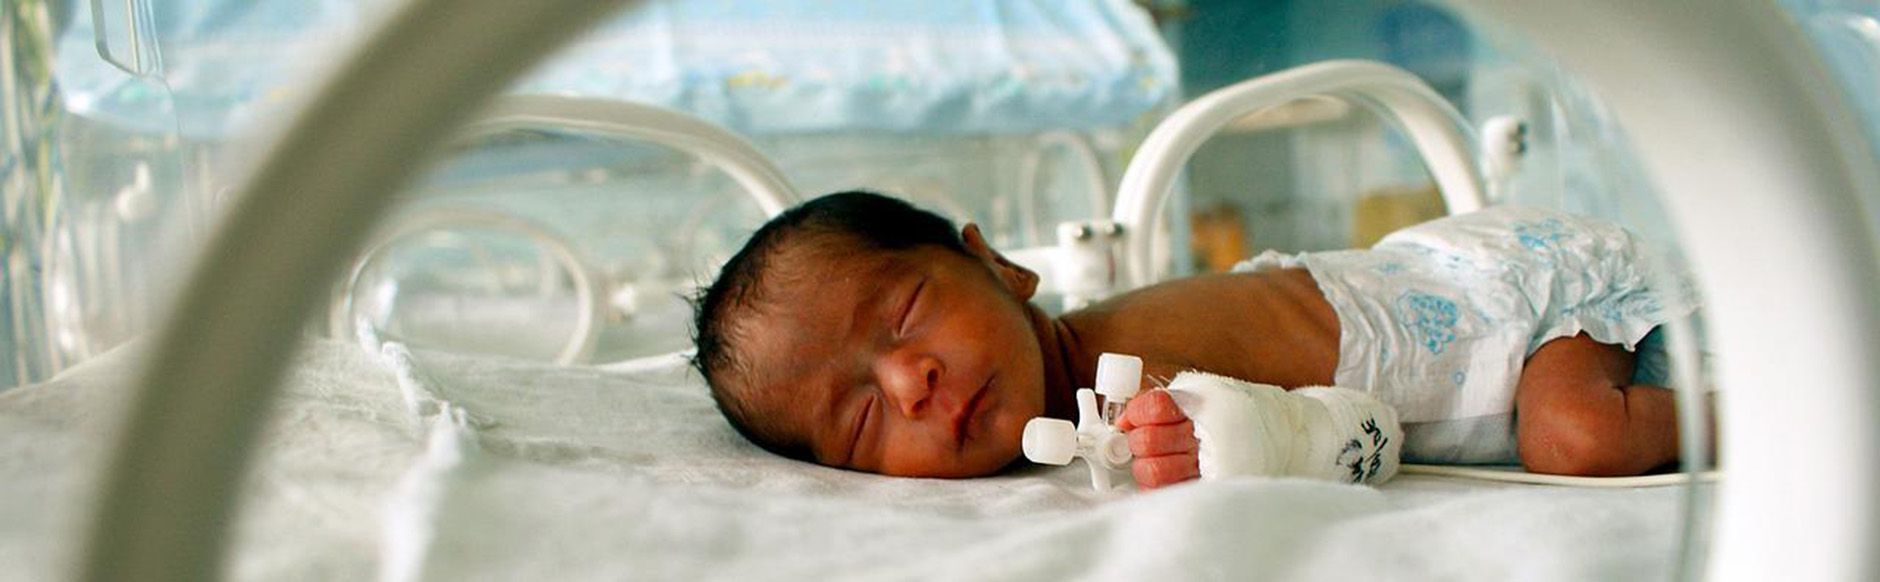 A newborn in an incubator